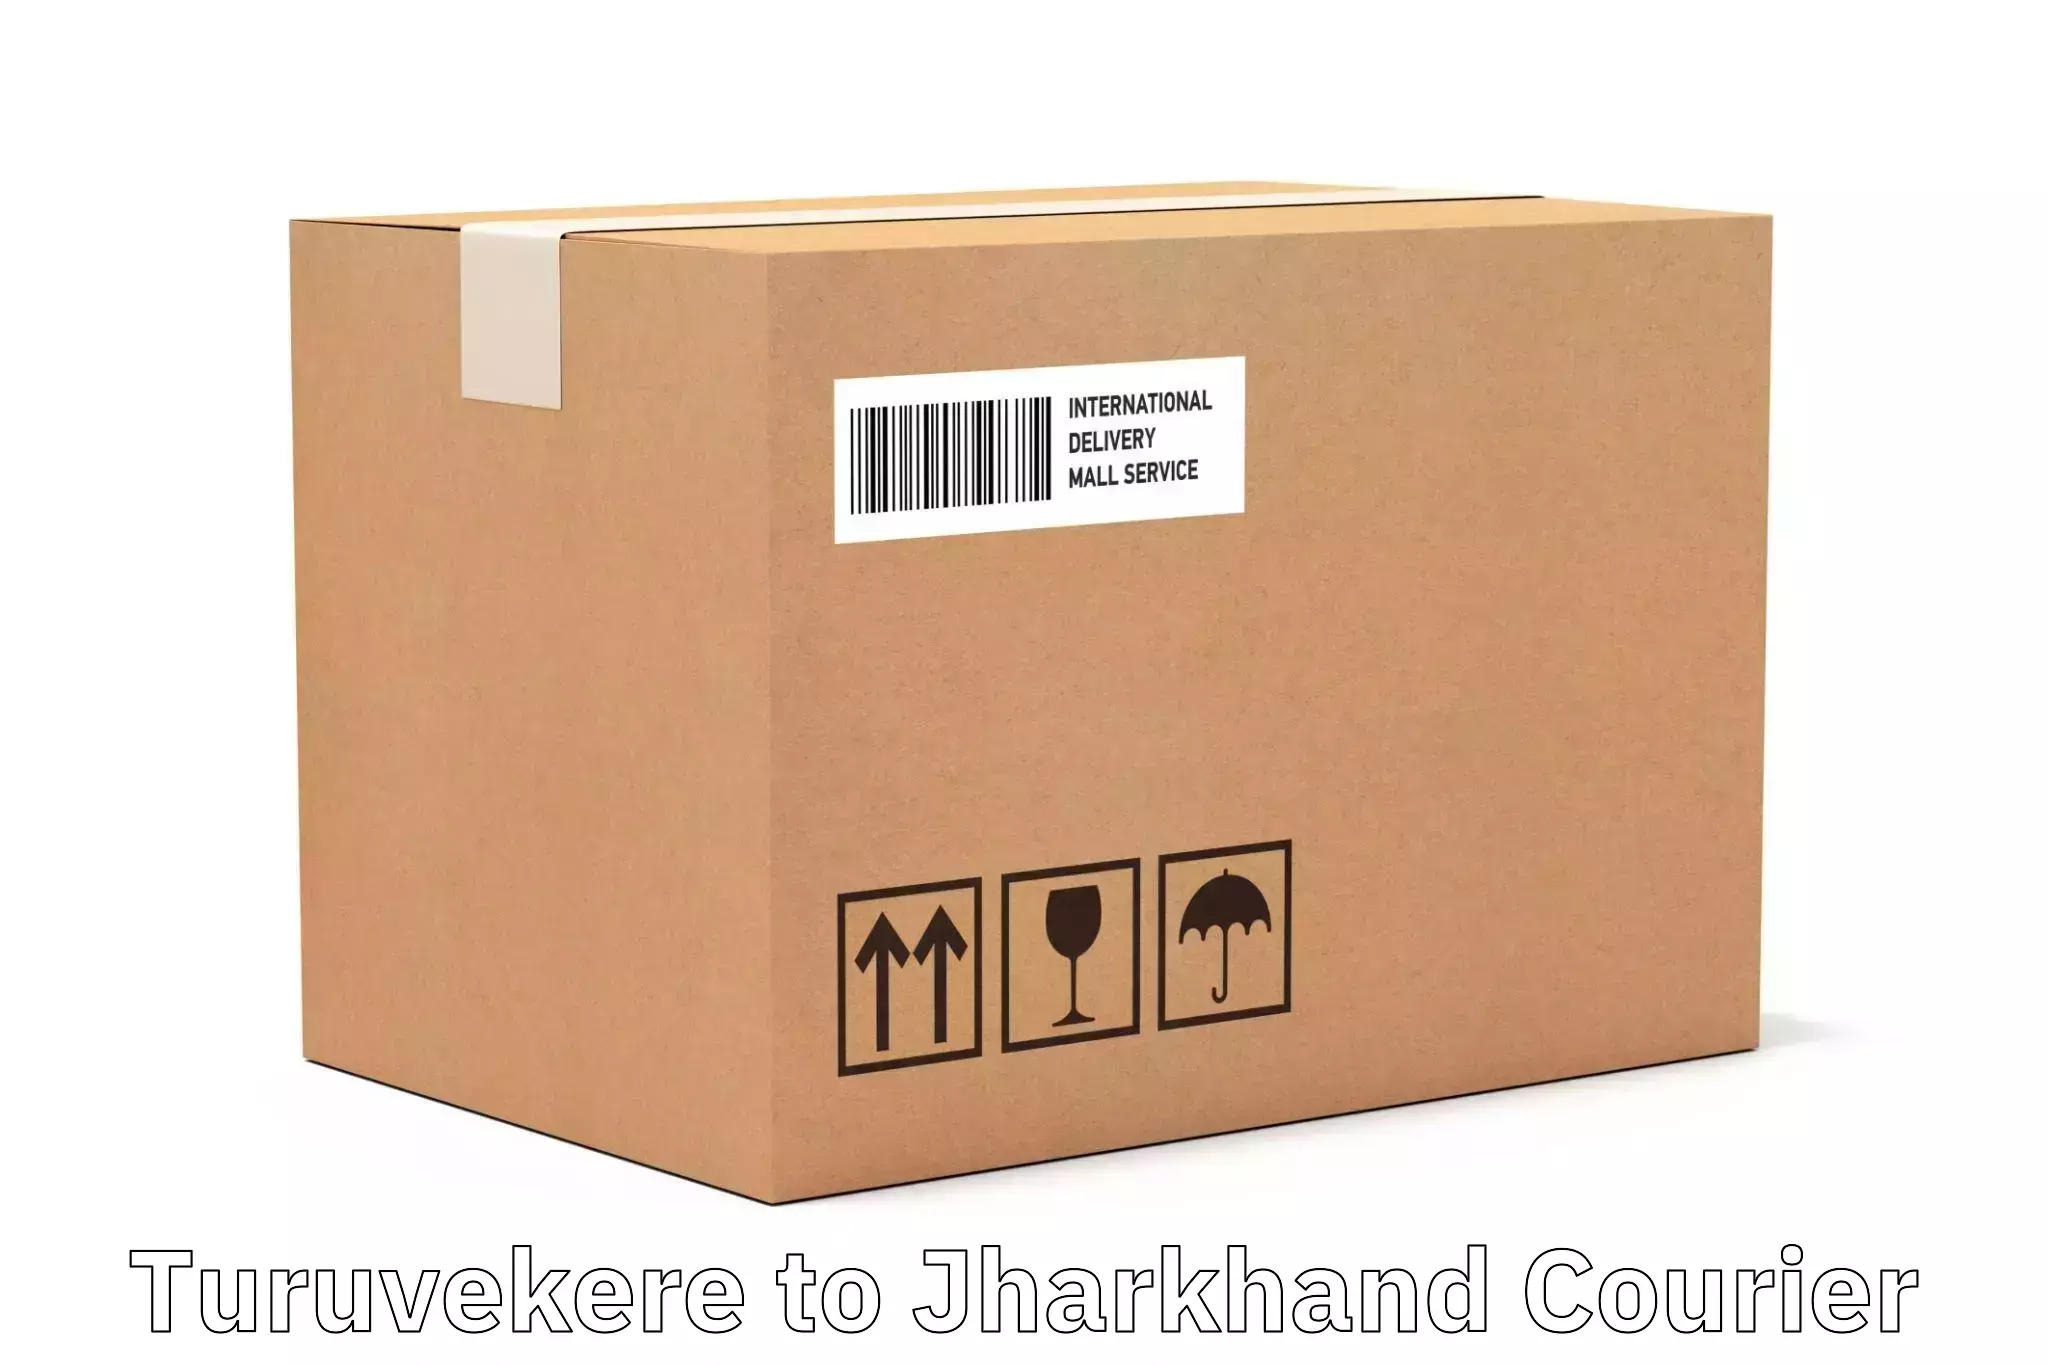 Efficient parcel service Turuvekere to West Singhbhum